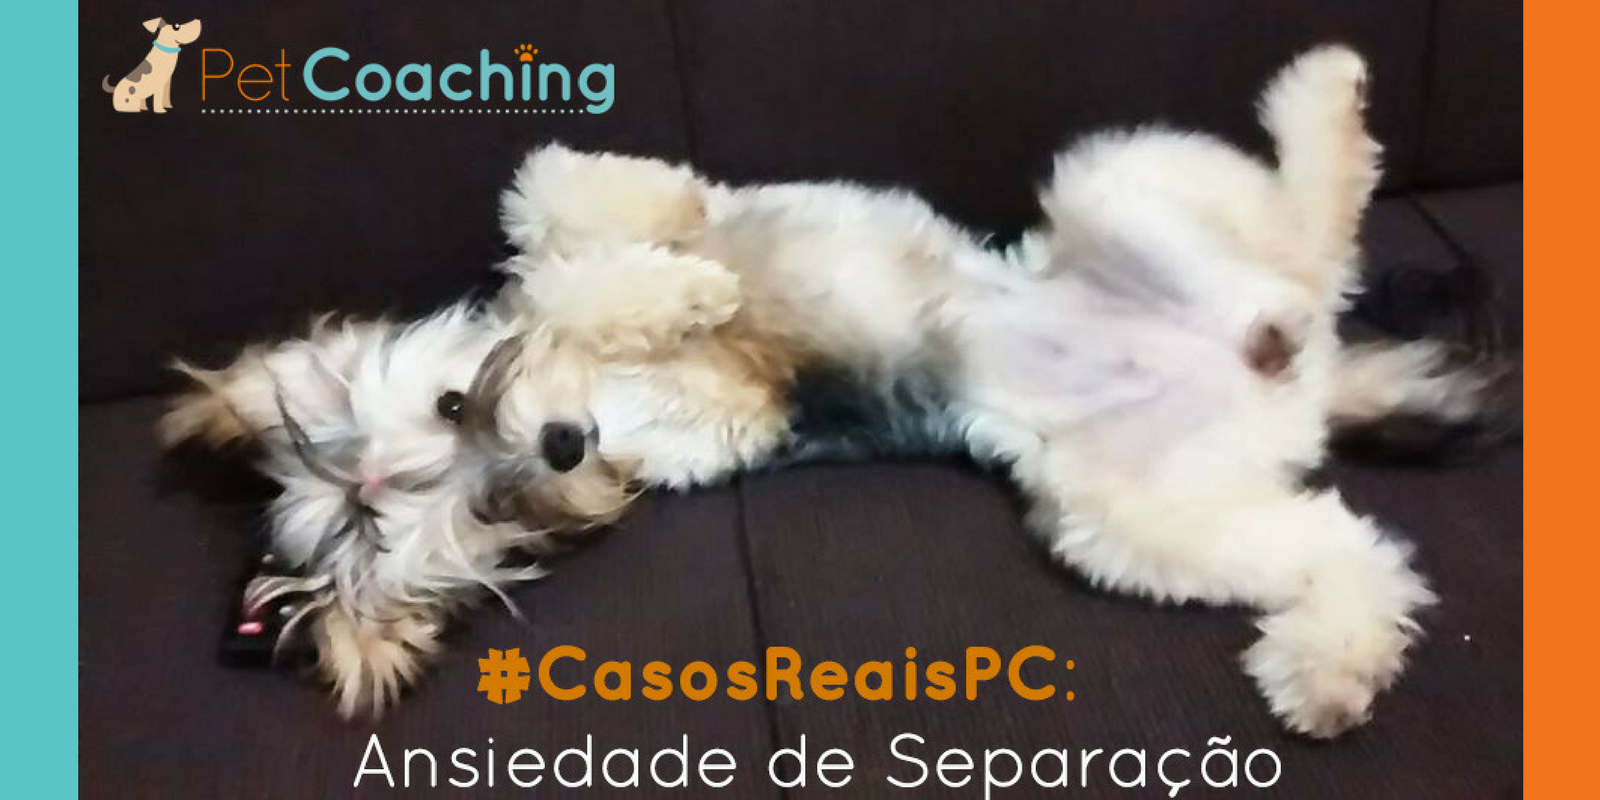 Lambeijos, Carla Ruas - #CasosReaisPC: Ansiedade de Separação